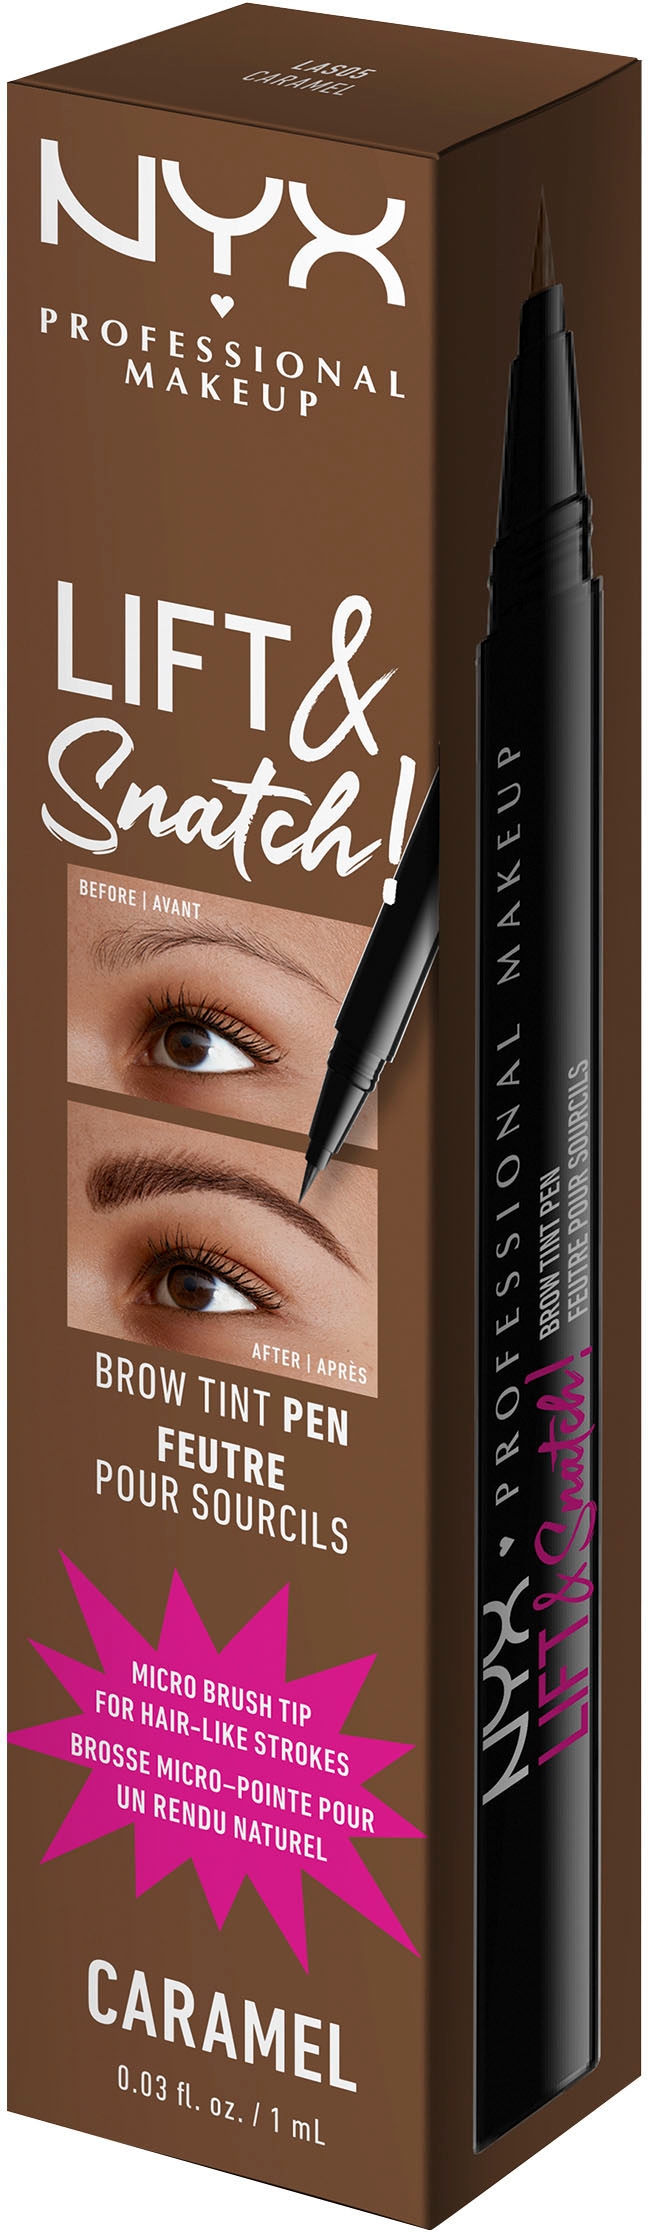 NYX Augenbrauen-Stift »Professional Makeup Lift & Snatch Brow Tint Pen«